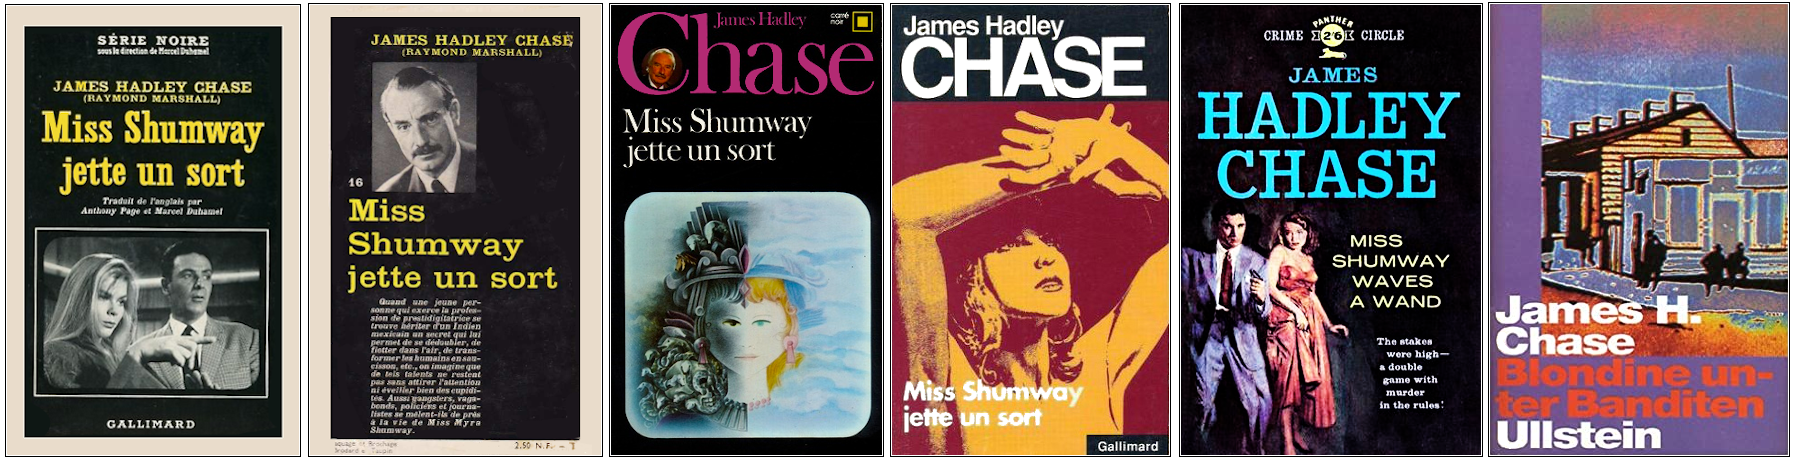 James Hadley Chase - Miss Shumway jette un sort - Éditions Gallimard, Panther et Ullstein Bücher